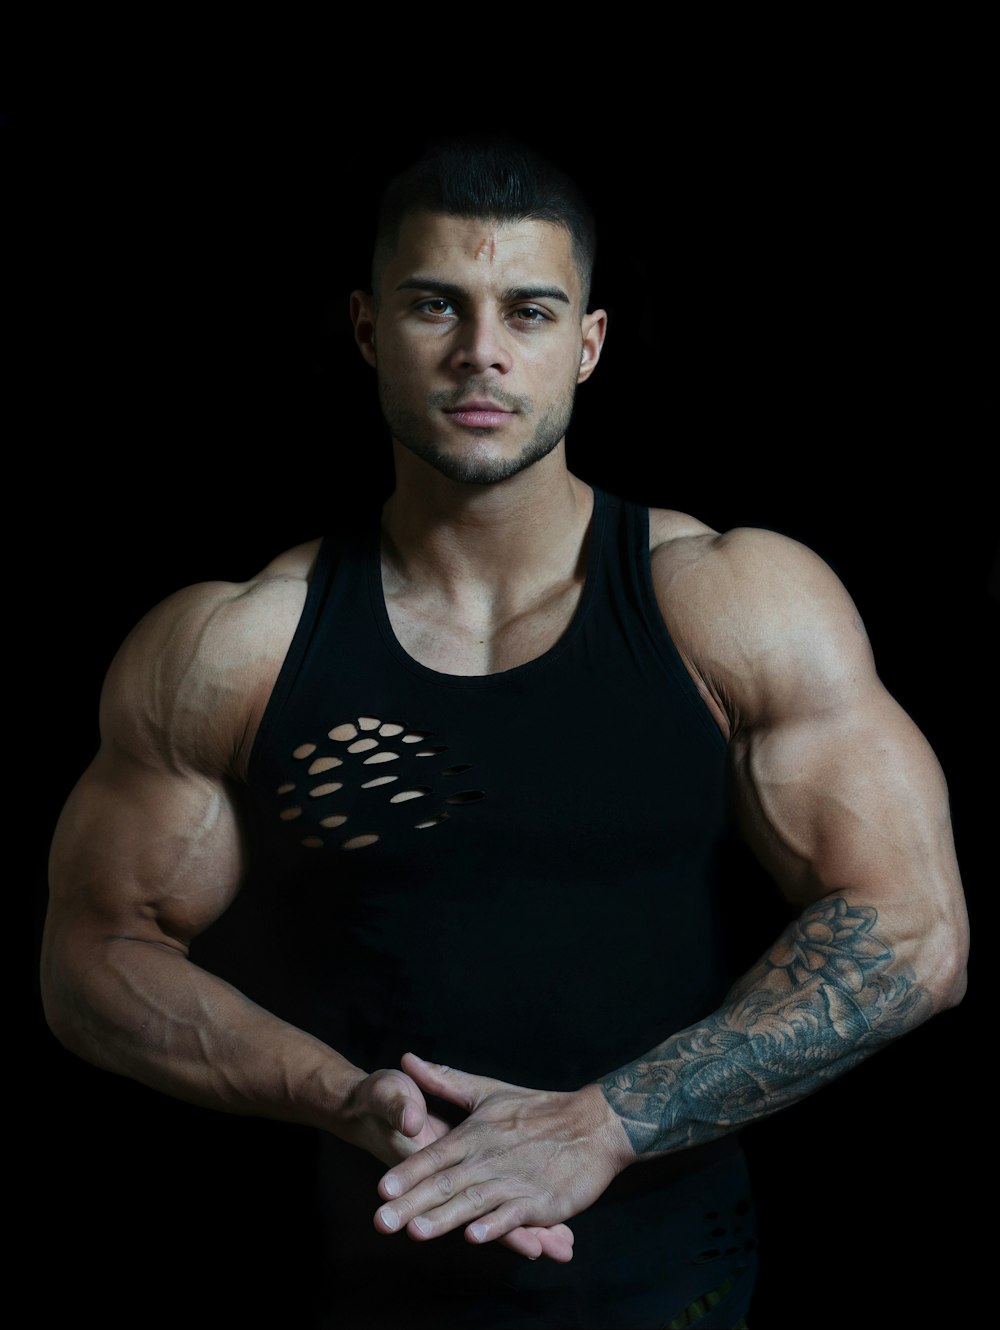 Mann in schwarzem Tanktop mit Tattoo am Arm